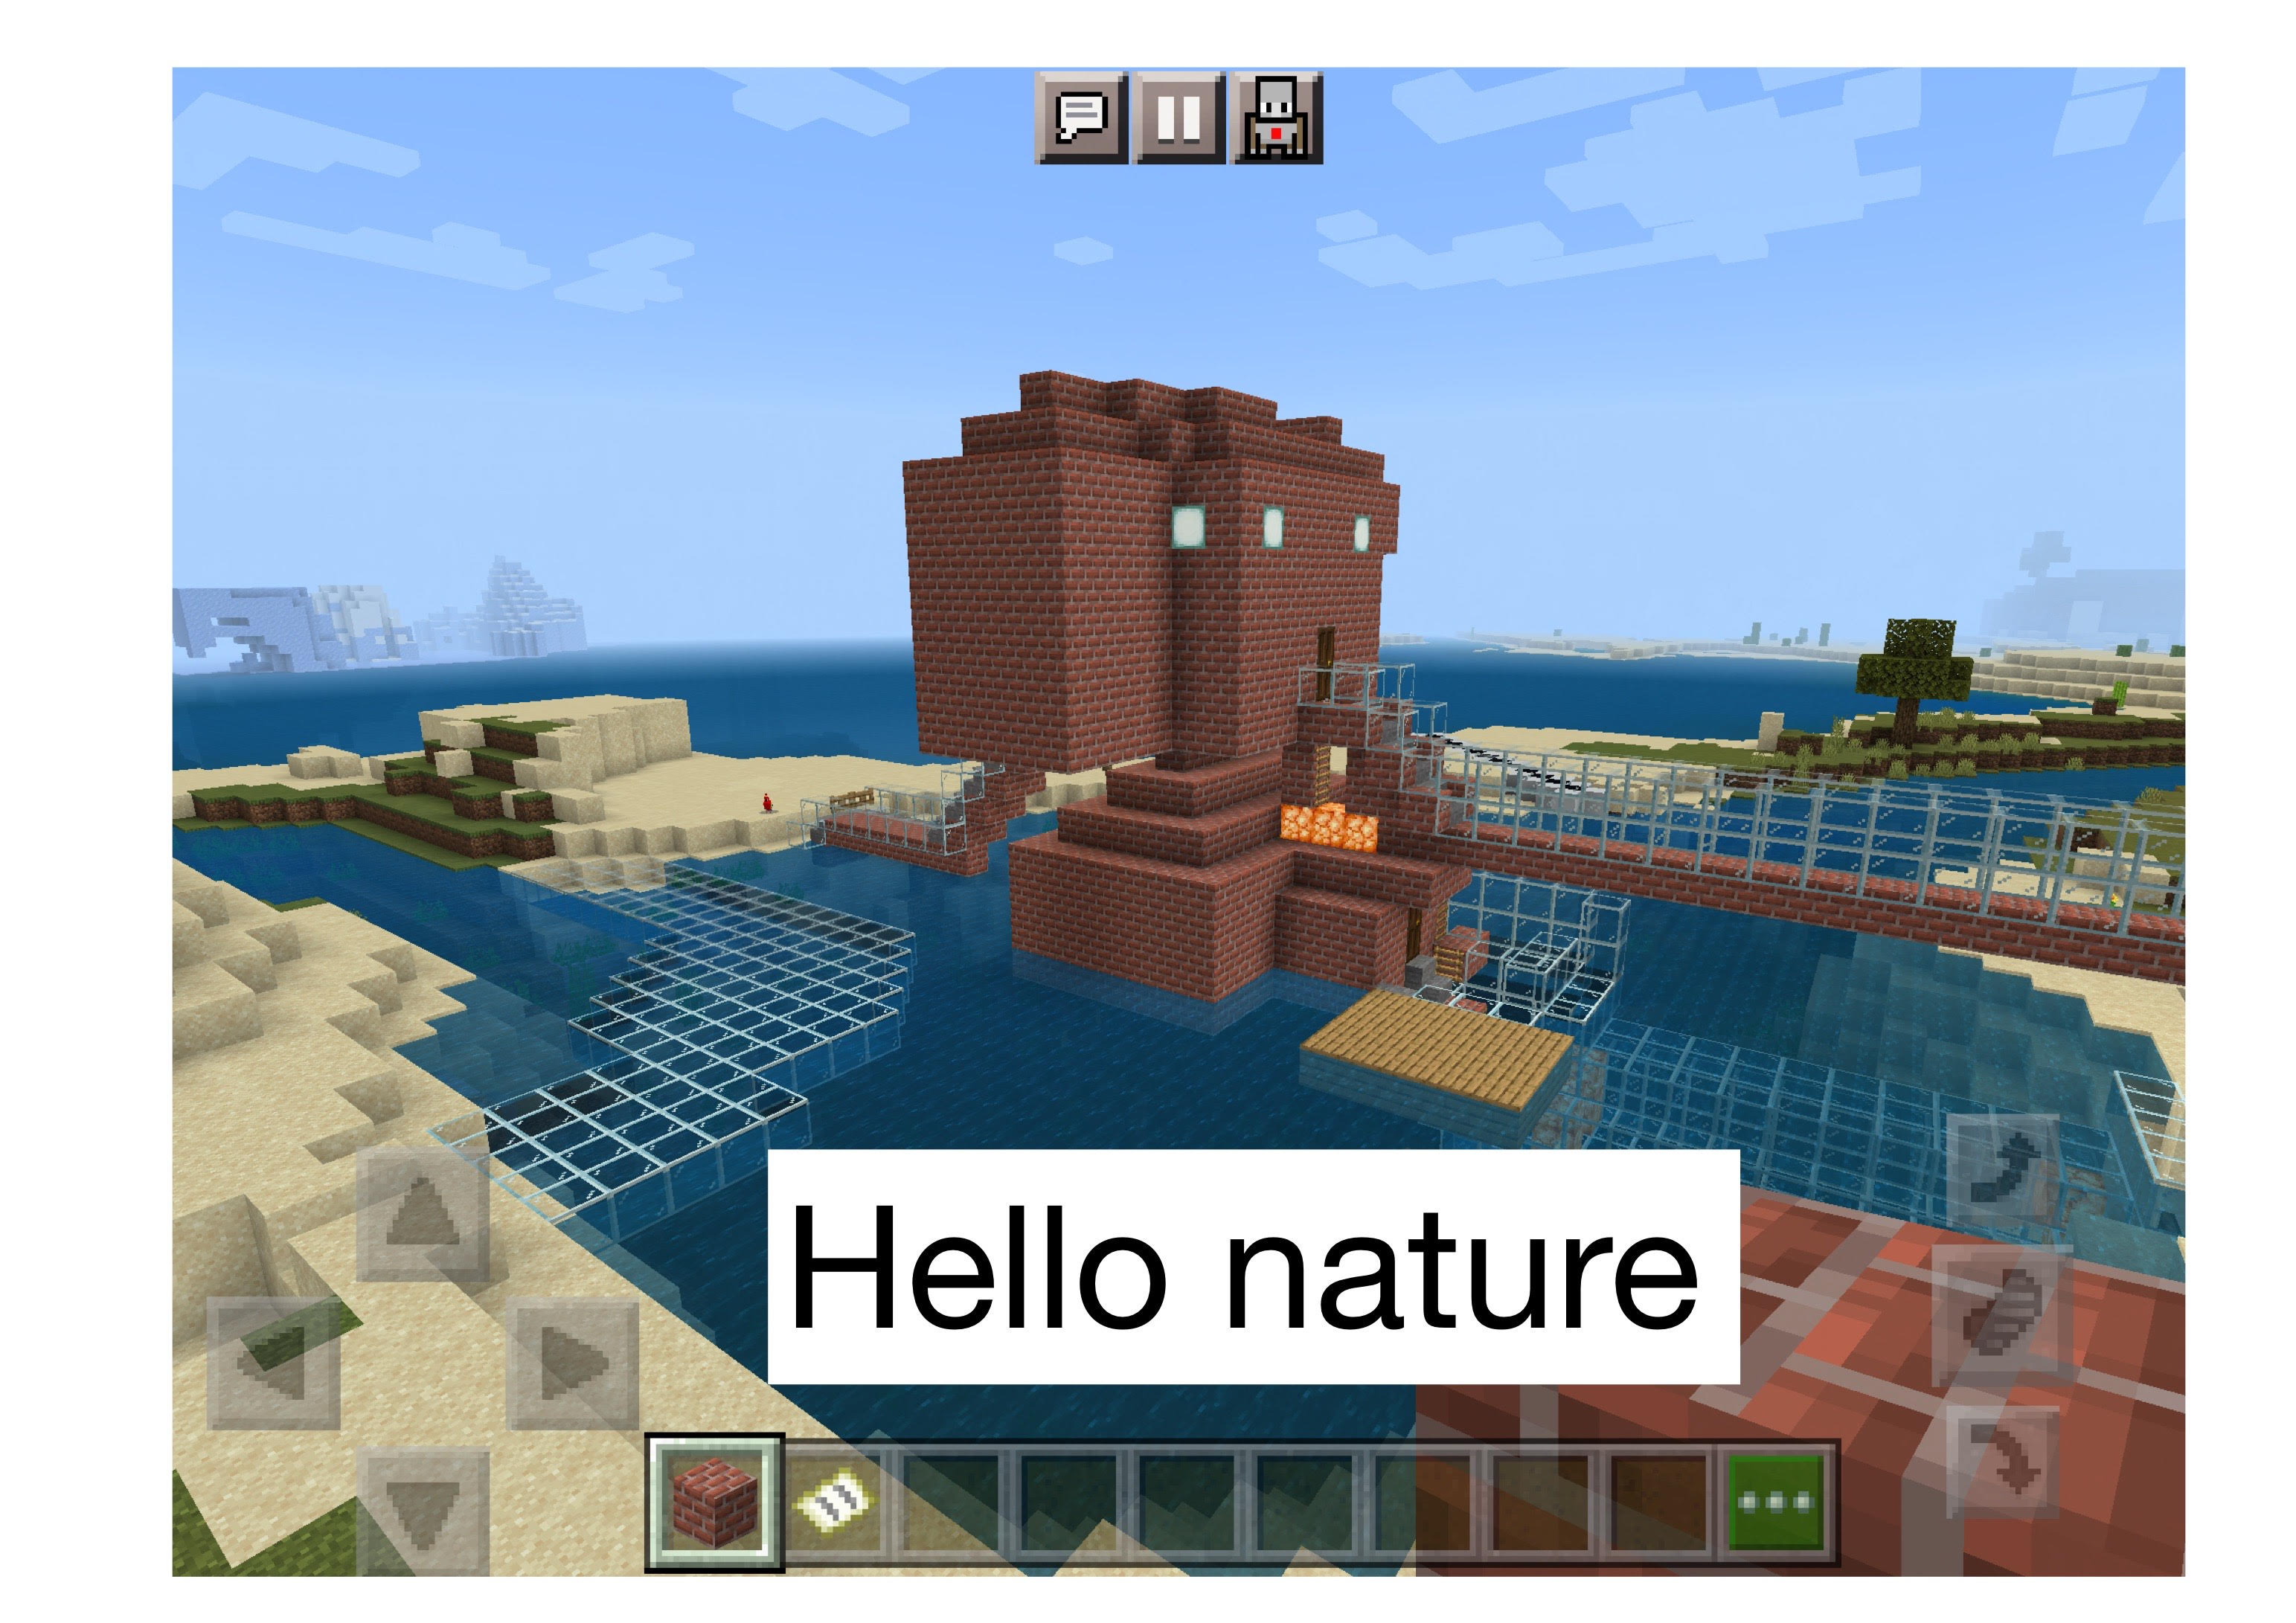 Hello nature!